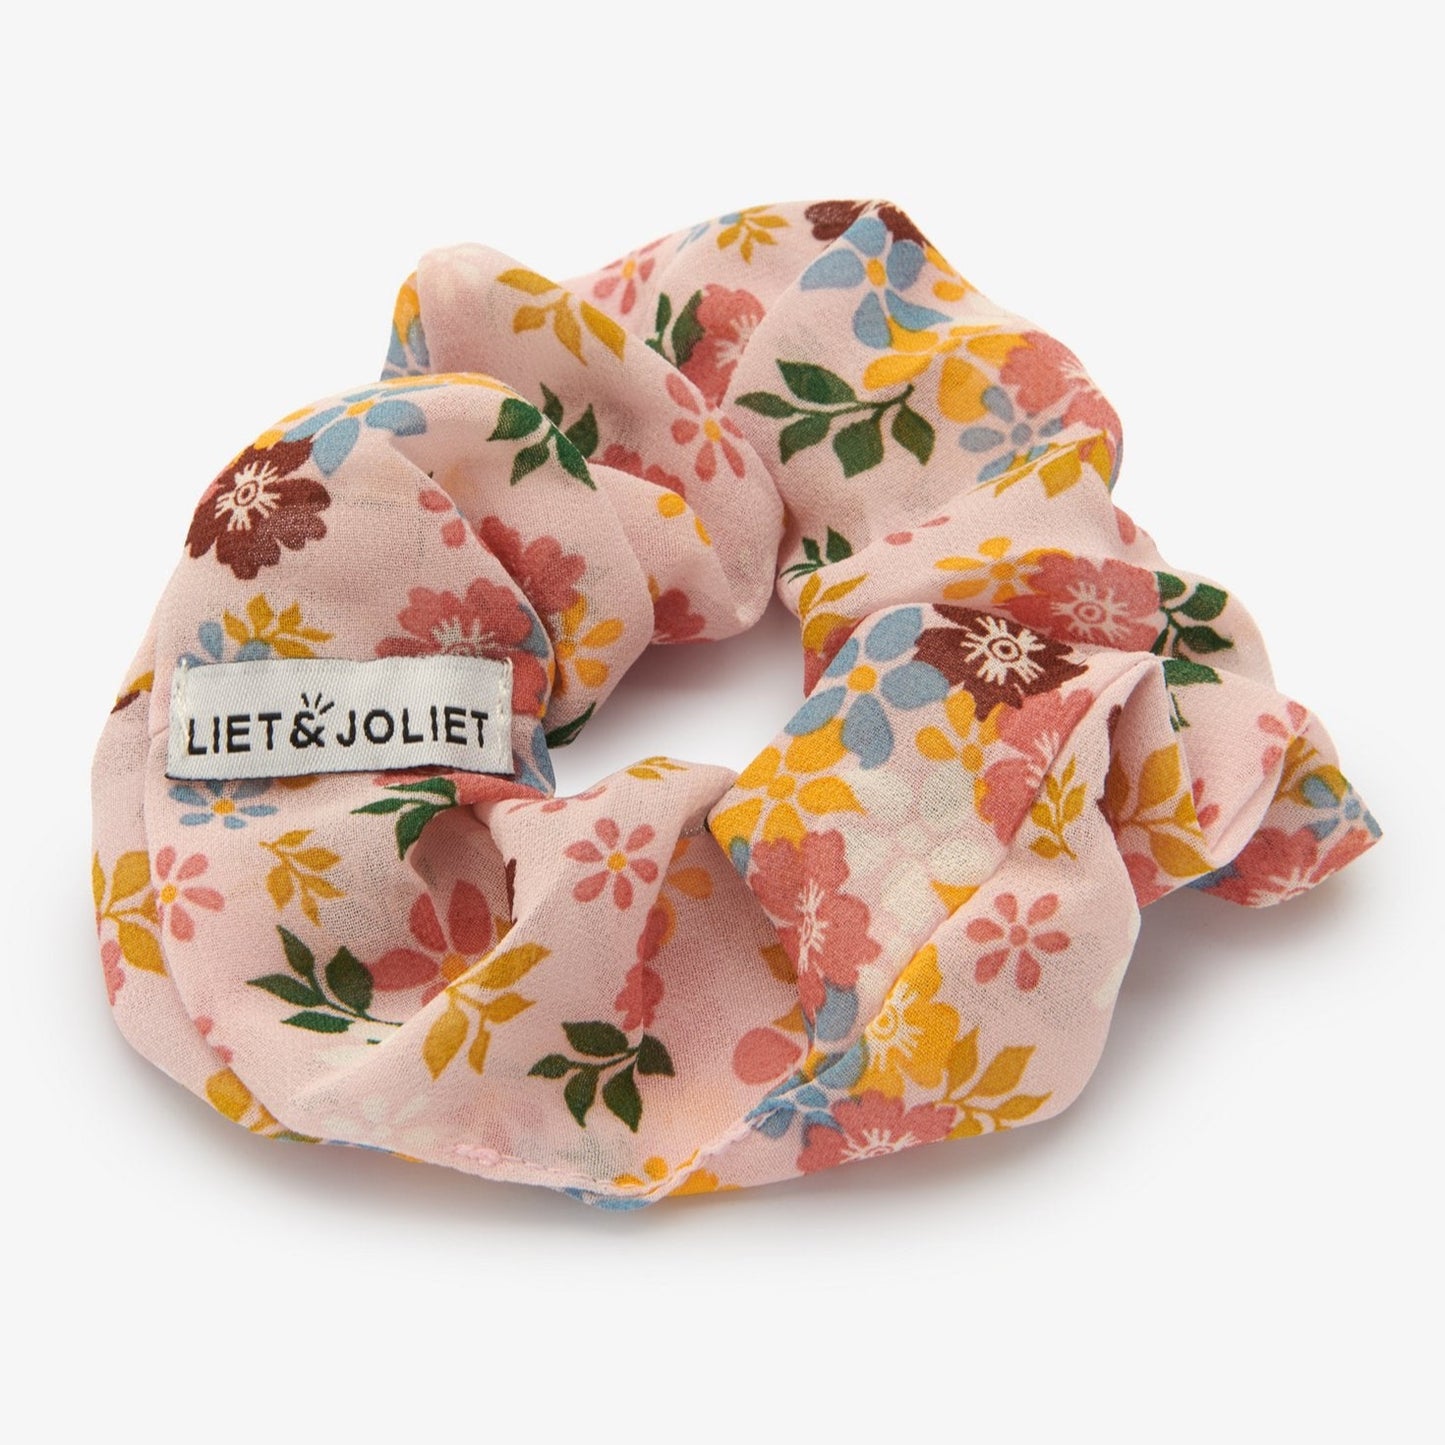 Voeg wat zomer toe aan je haar, met deze vrolijke scrunchie van Liet&Joliet.    De scrunchie is gemaakt van polyester en heeft een diameter van ongeveer 13cm. De stof heeft een mesh effect in een beige kleur met gekleurde bloementjkes.